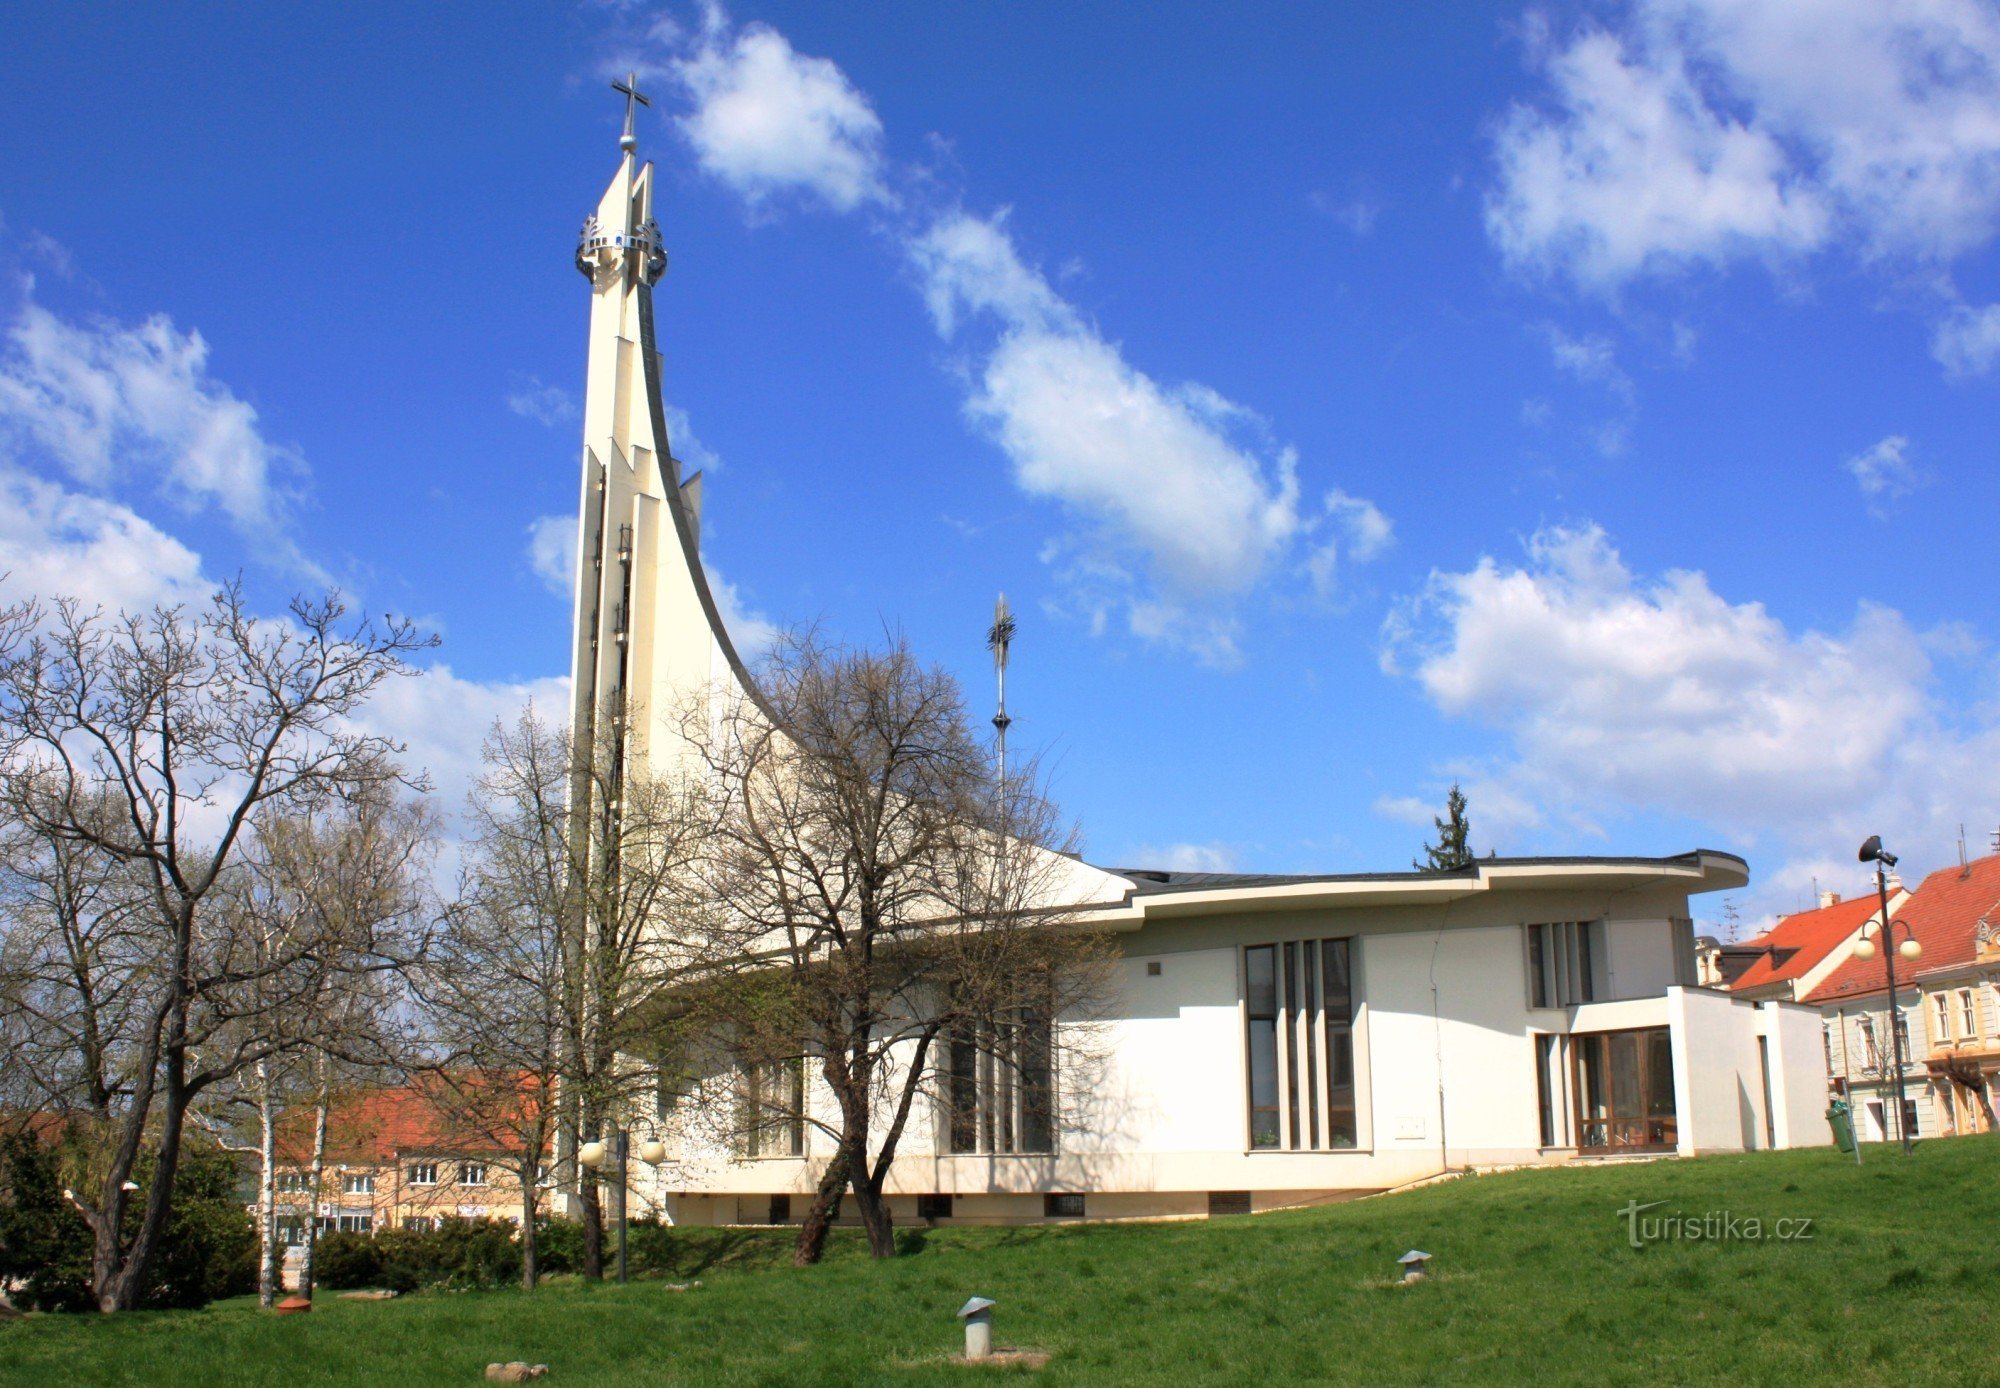 Hustopeče - nhà thờ St. Wenceslas và St. Agnes Česká